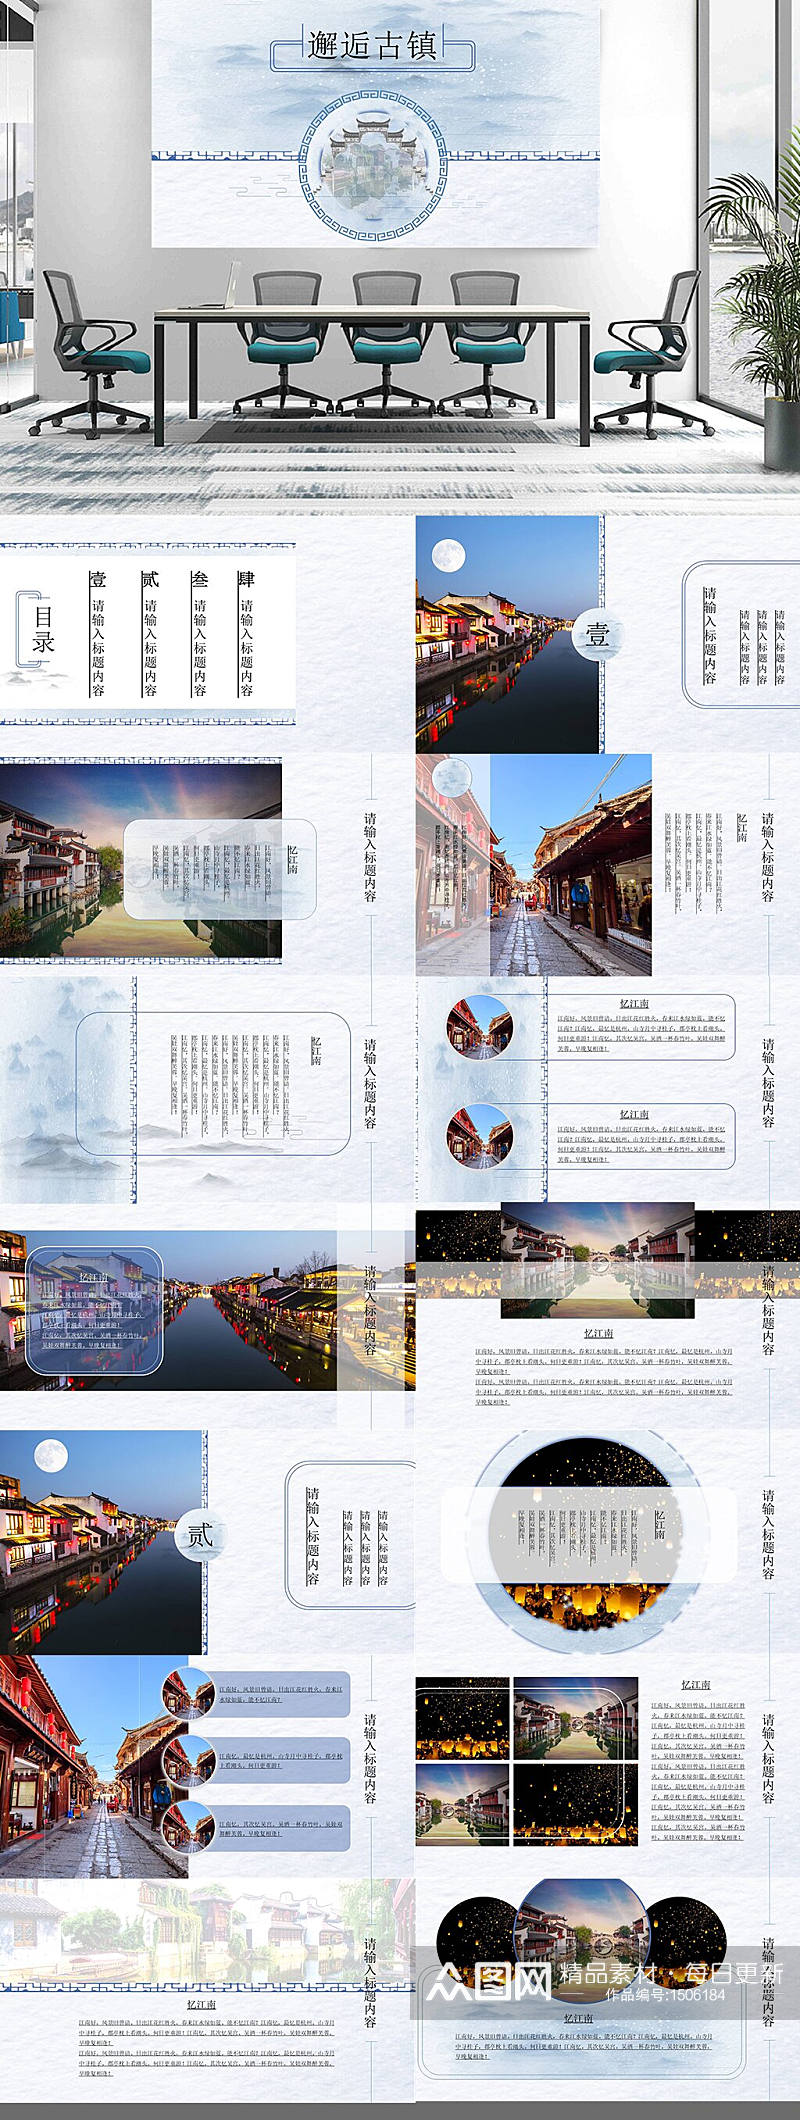 中国风旅游画册PPT素材